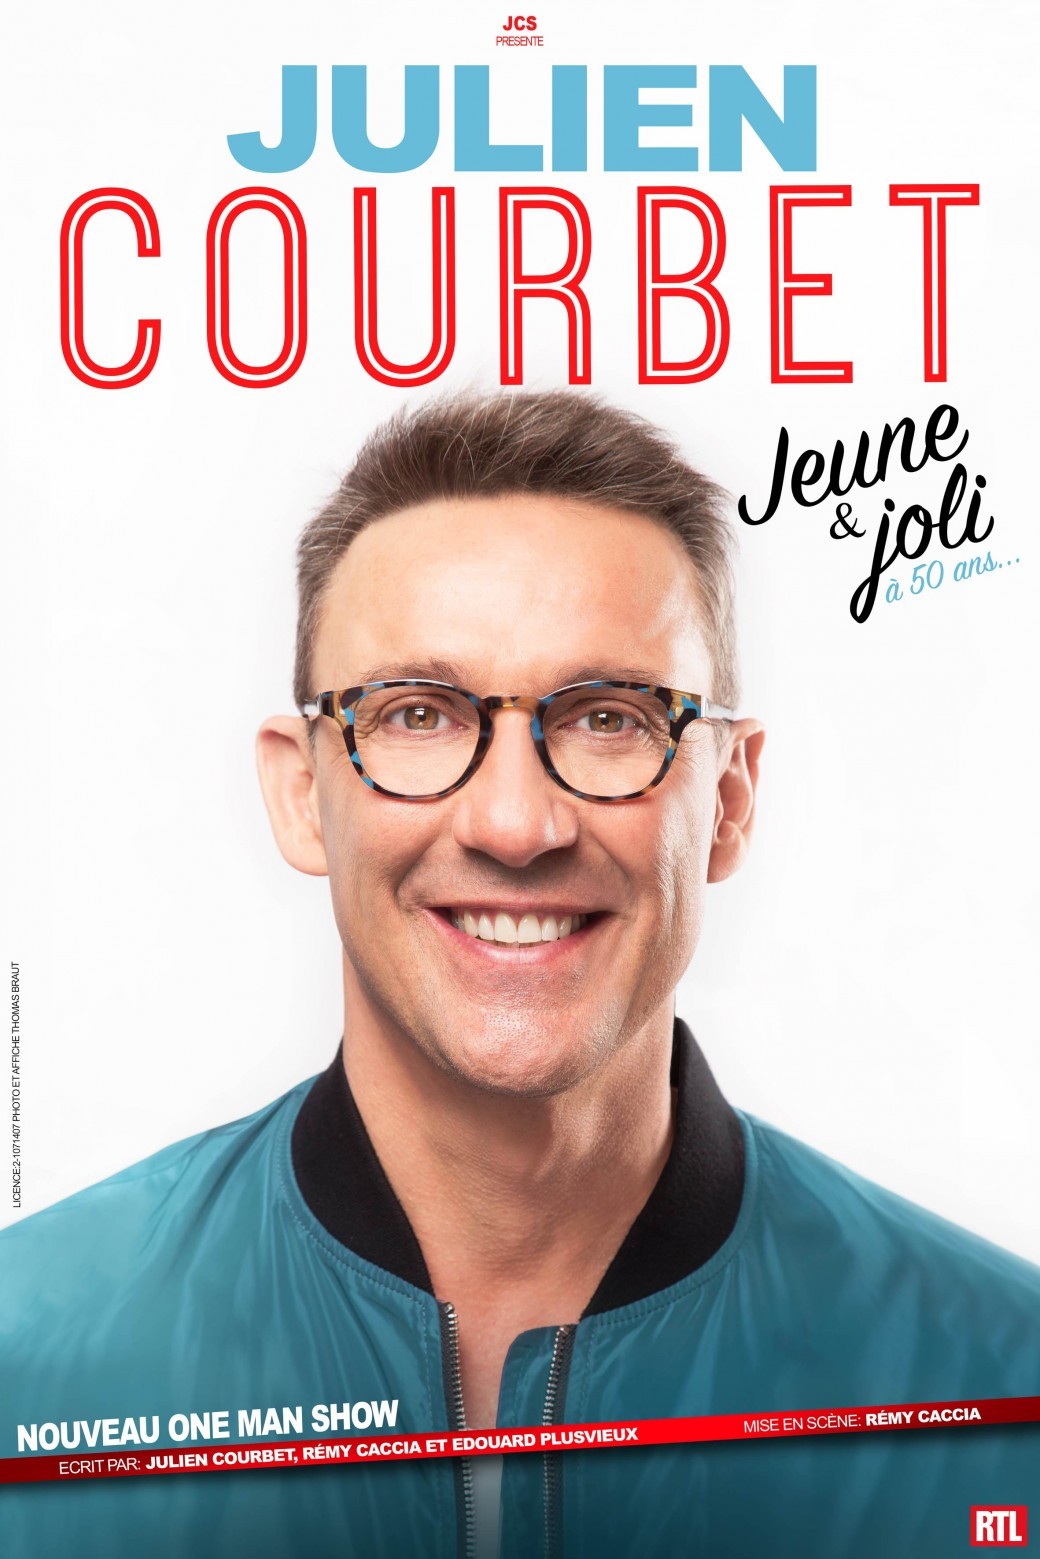 Julien Courbet dans "Jeune et joli à 50 ans..."